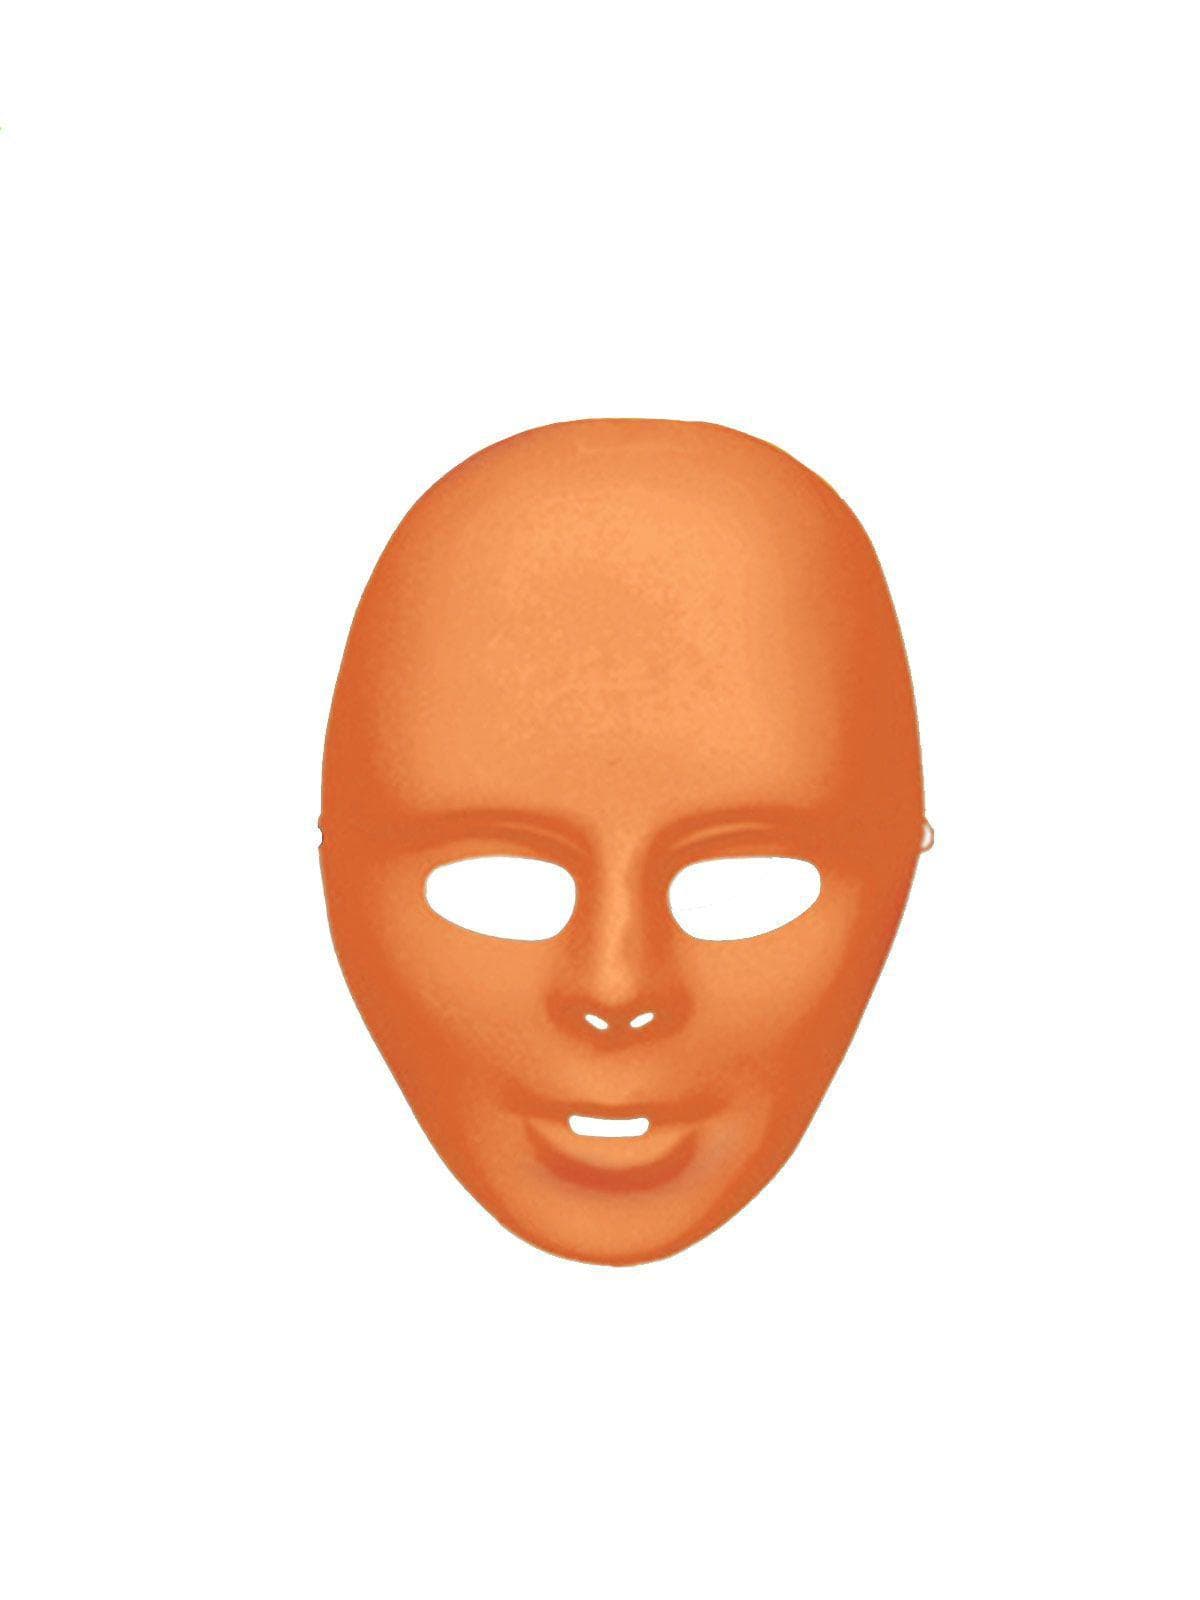 Orange Full Face Mask - costumes.com